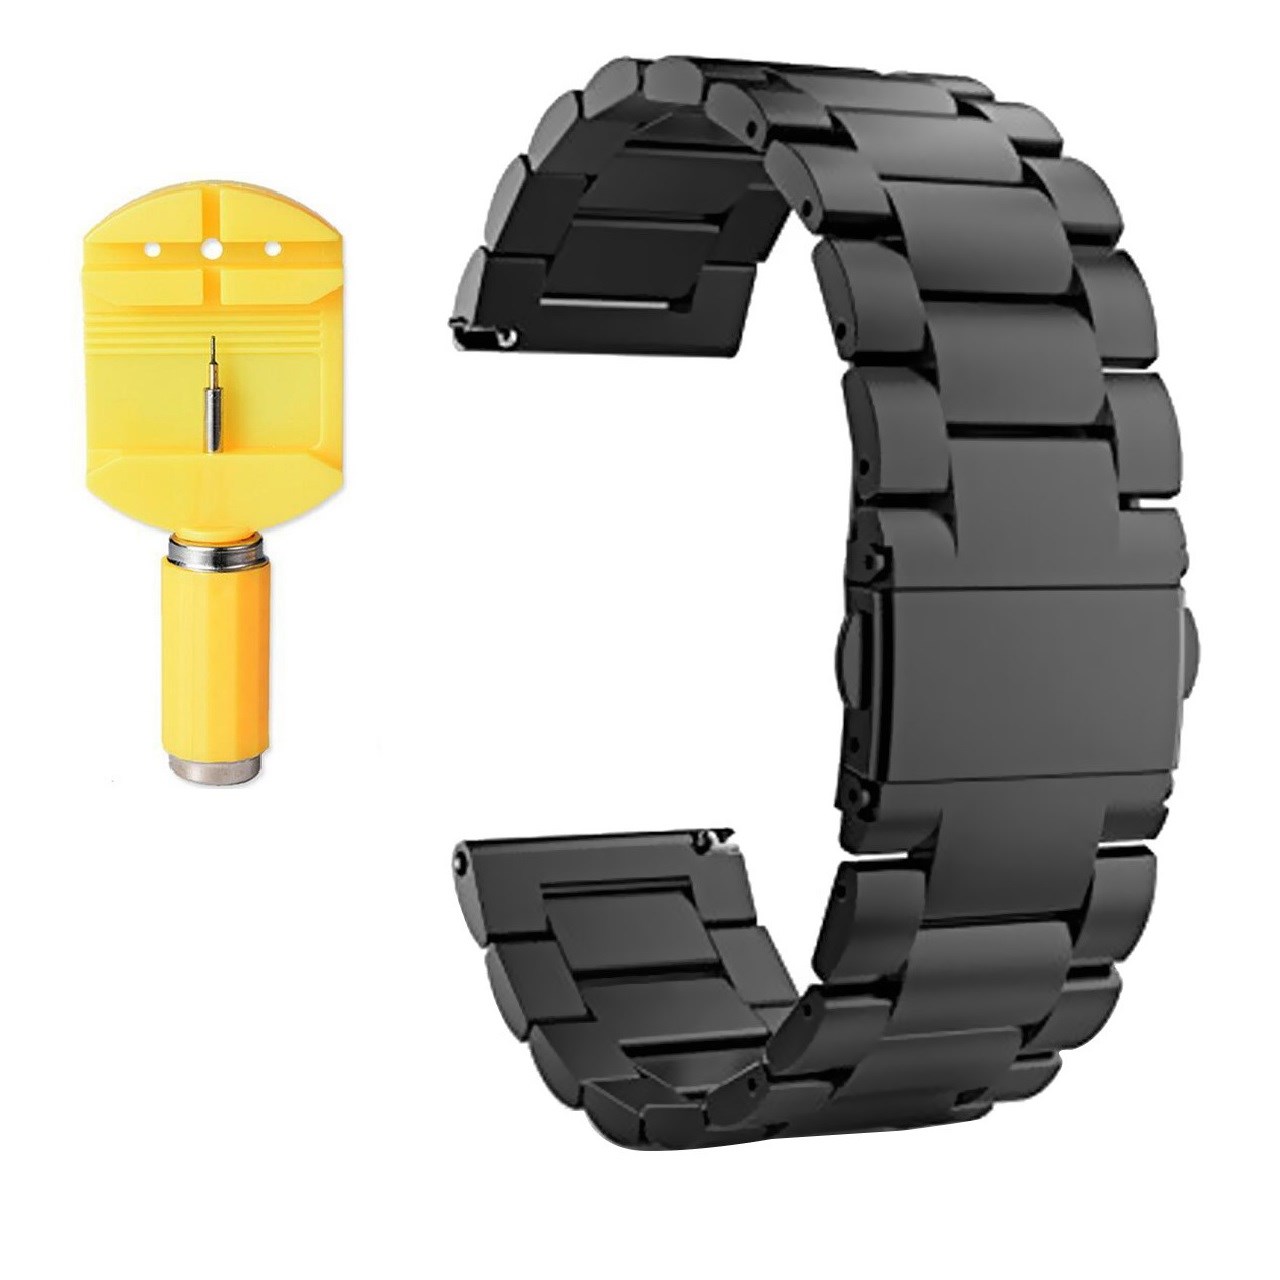 نقد و بررسی بند ساعت هوشمند مدل Ceramics-1 مناسب برای Gear S3 و galaxy watch 46 mm به همراه محافظ صفحه نمایش و آچار برای تغییر اندازه بند توسط خریداران